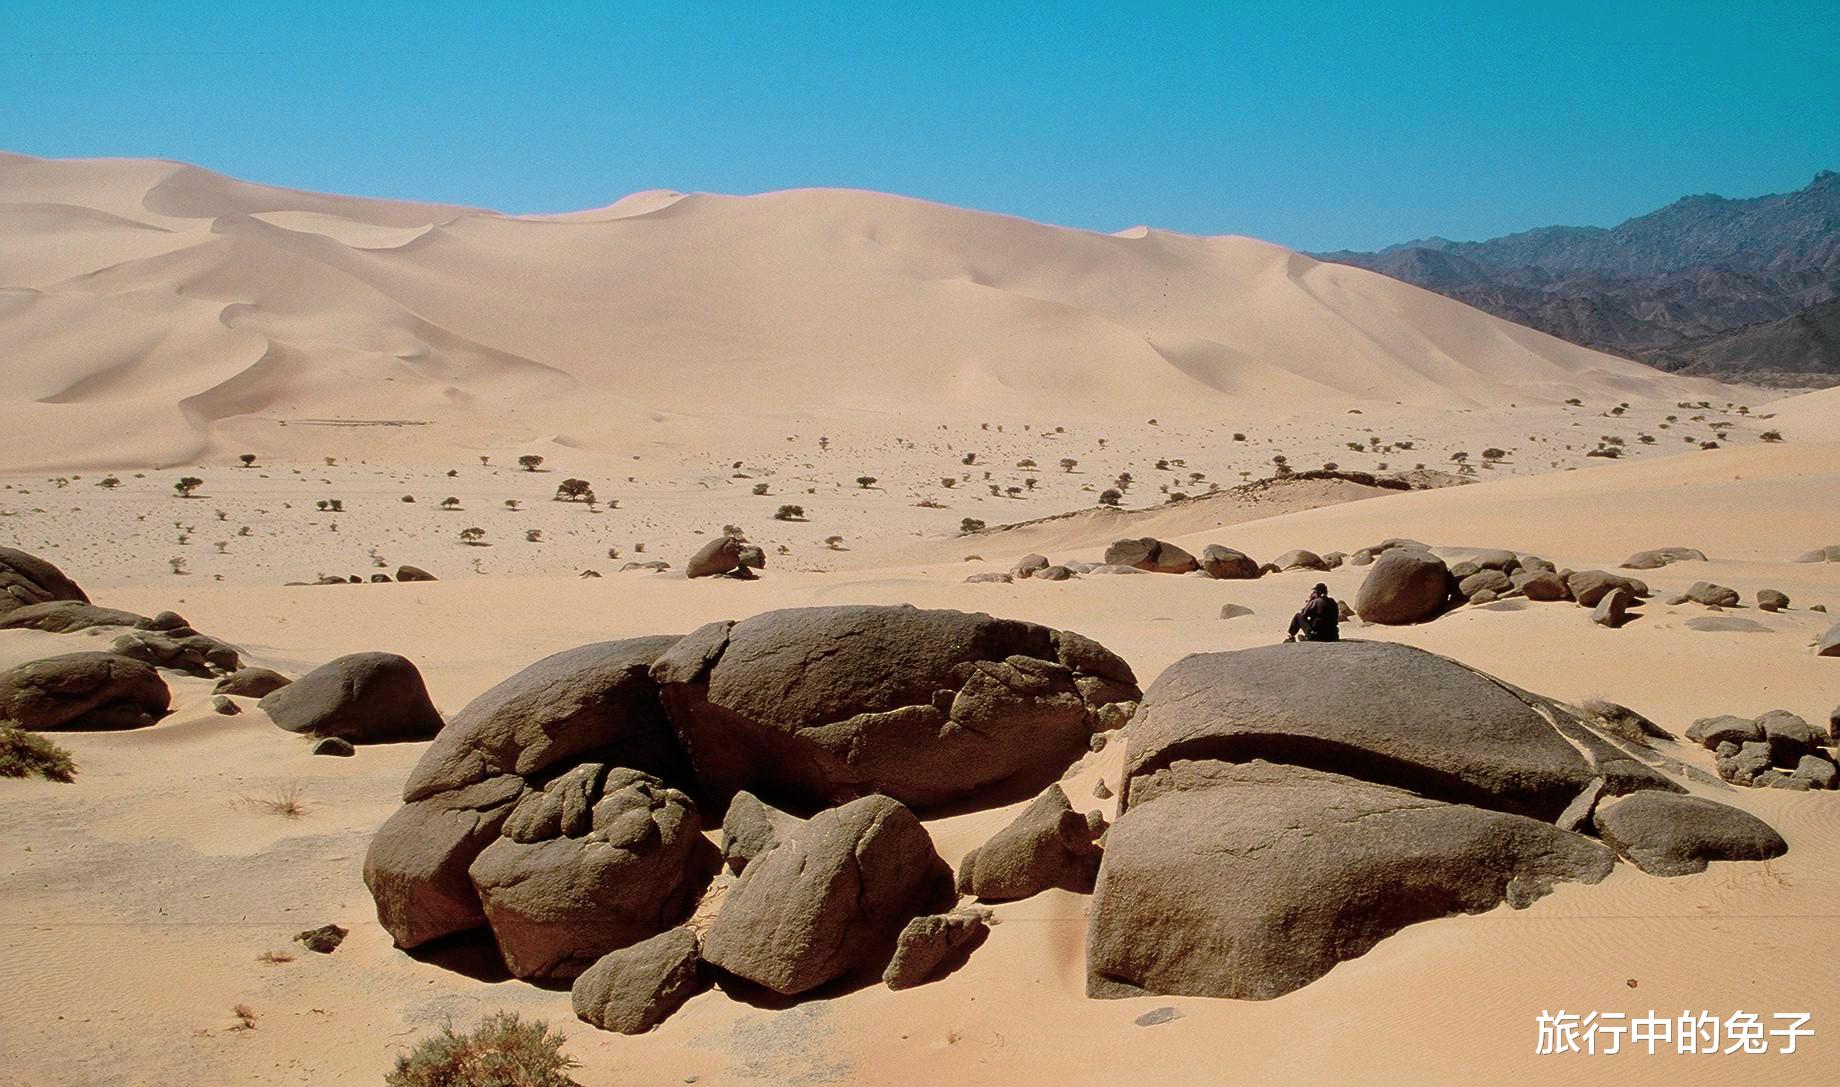 撒哈拉沙漠 撒哈拉的沙子平均深度为150米，下面有些什么？